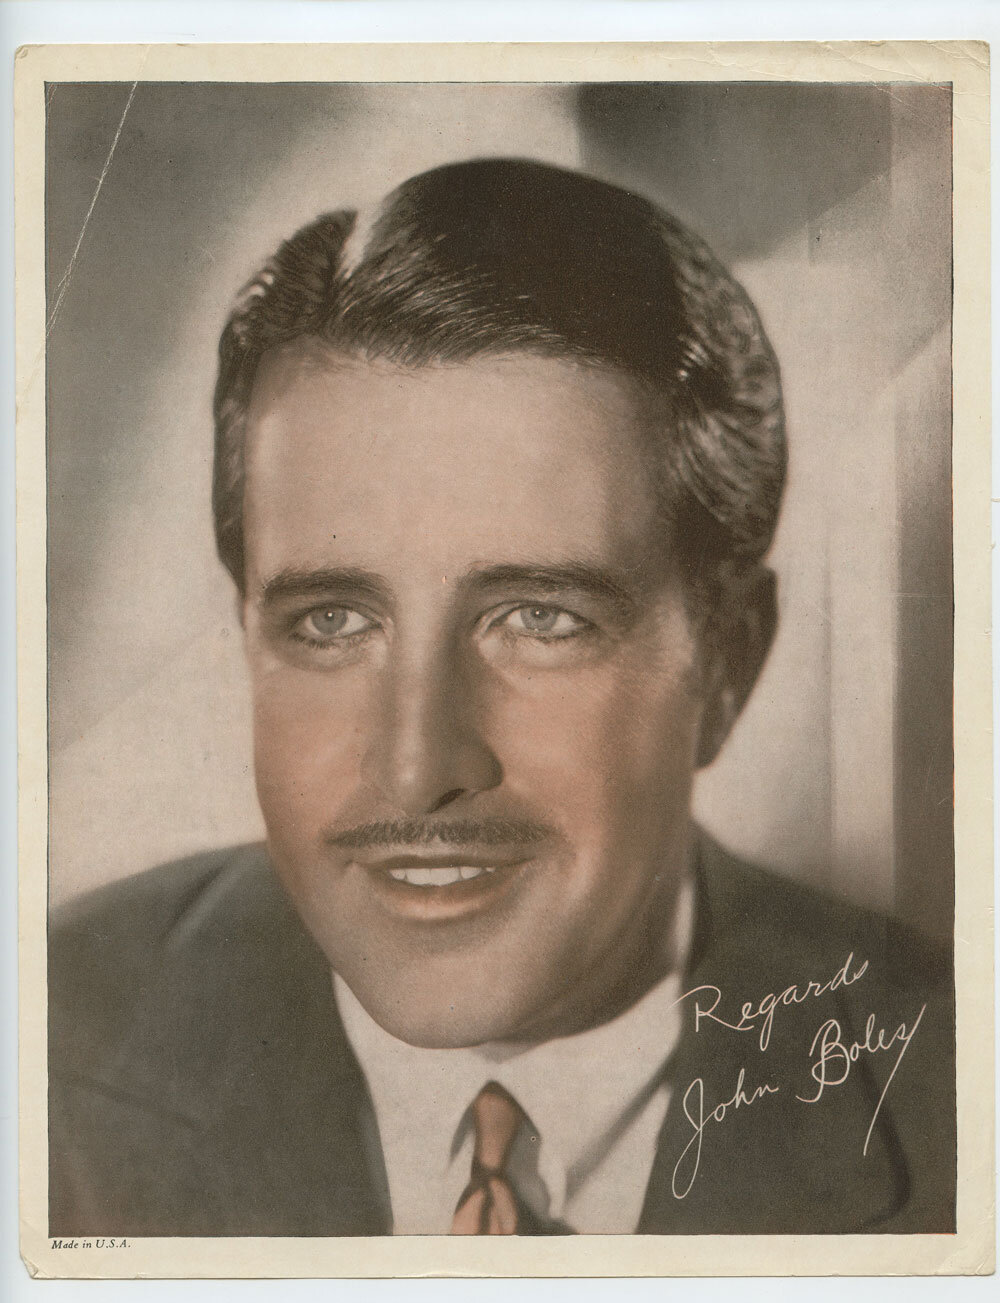 John Boles Photo Print 1931 Publicity Portrait Original Vintage